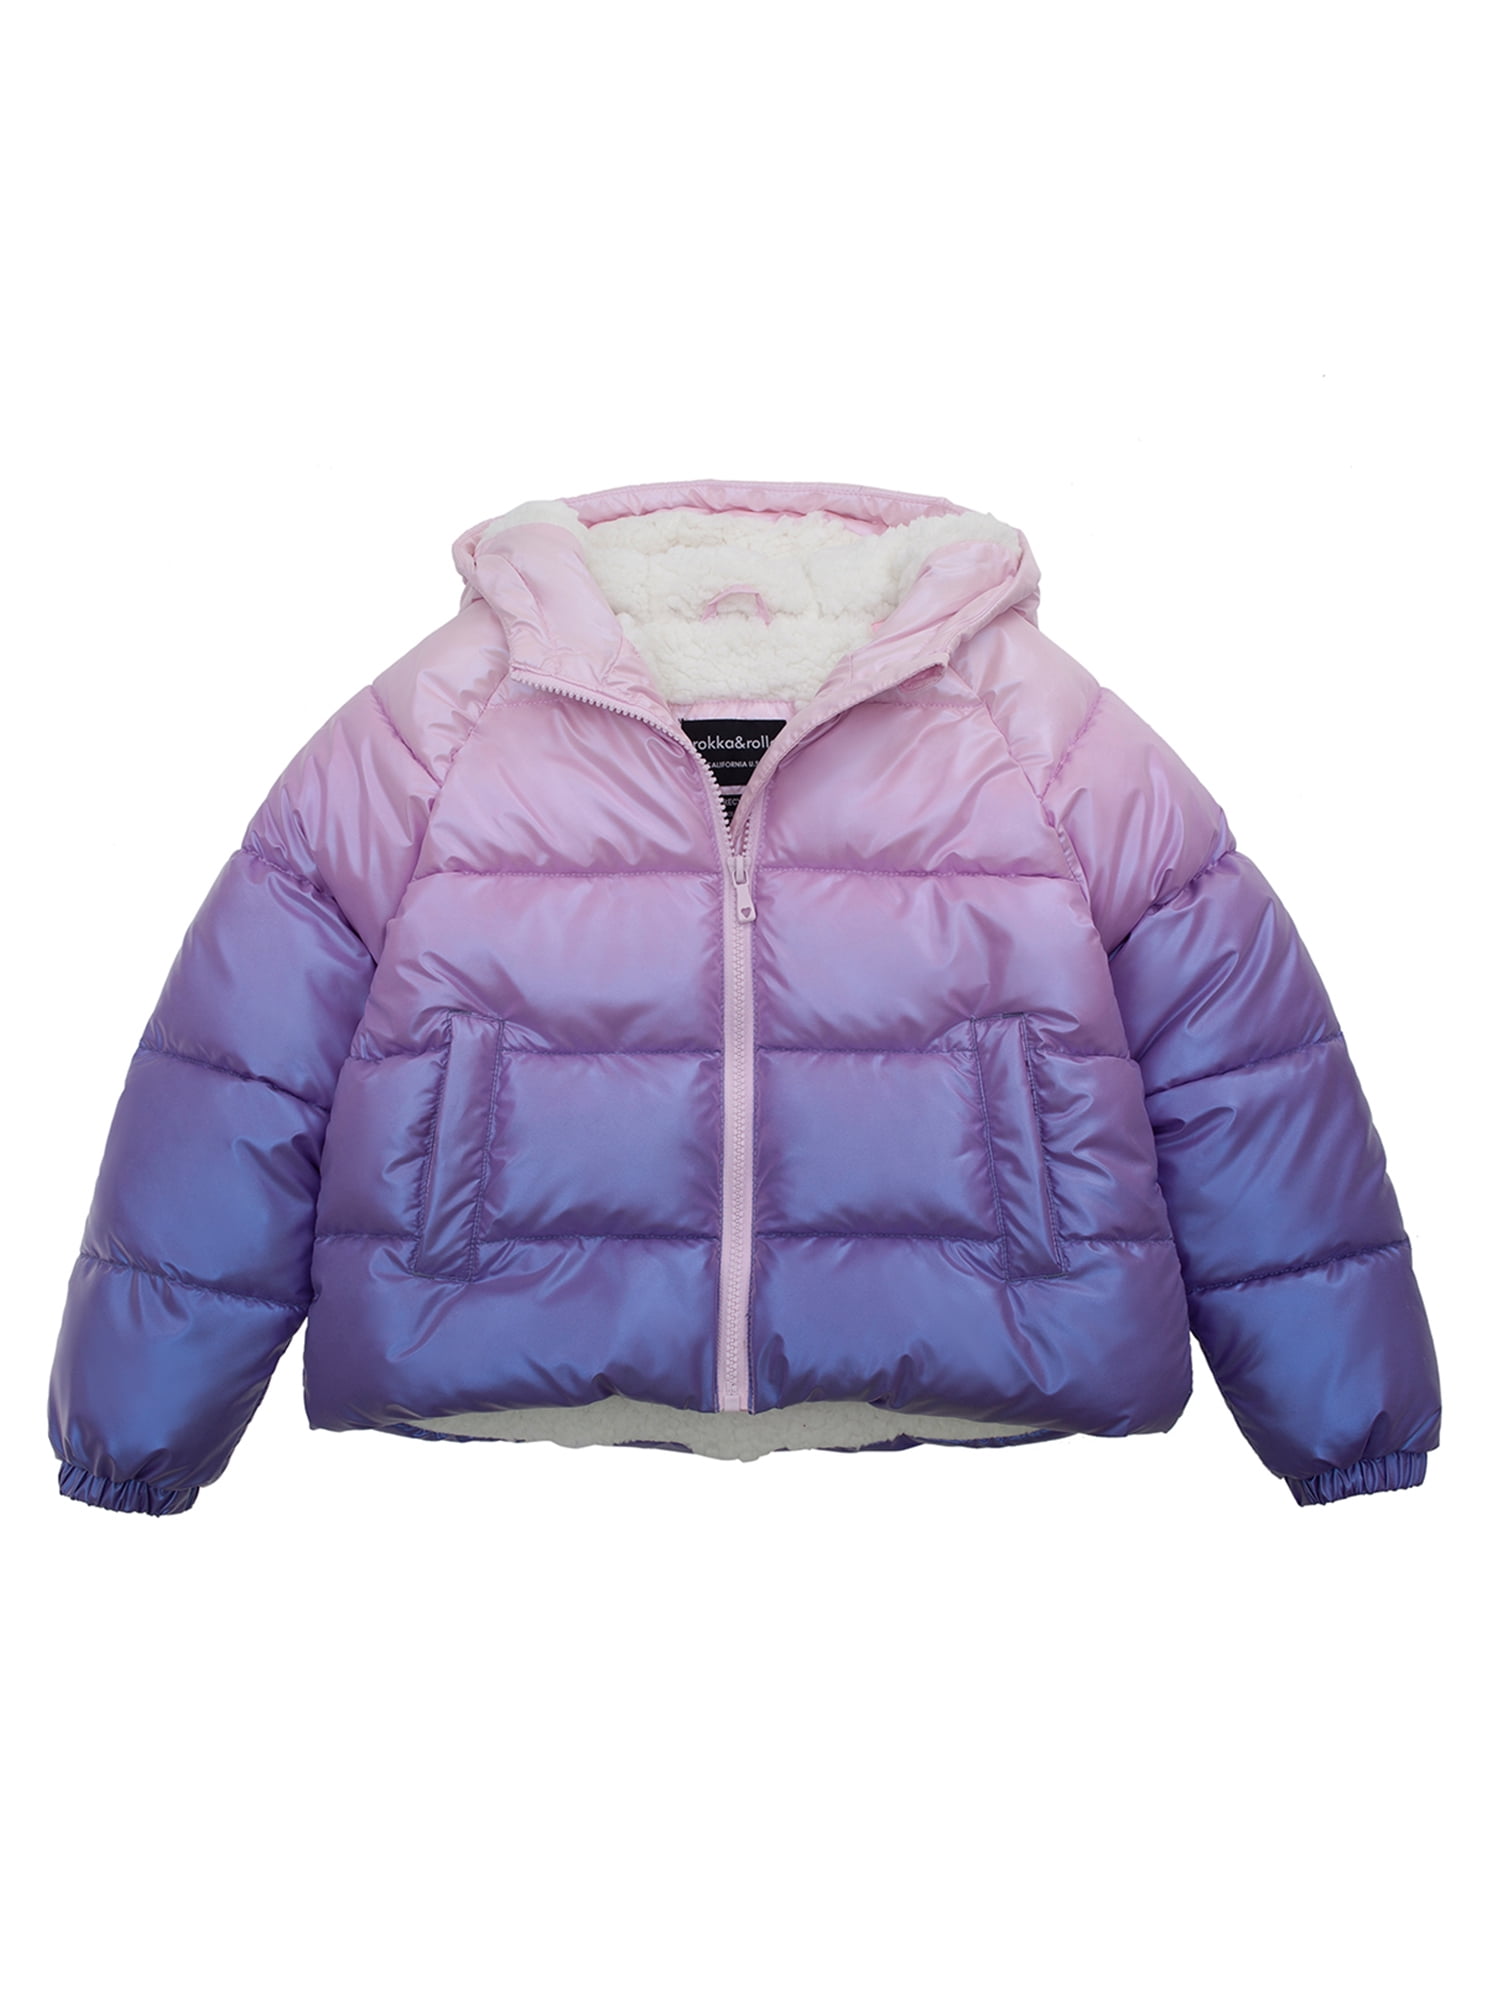 Rokka&Rolla Girls' Heavy Puffer Jacket Sherpa Lined Winter Coat, Sizes ...